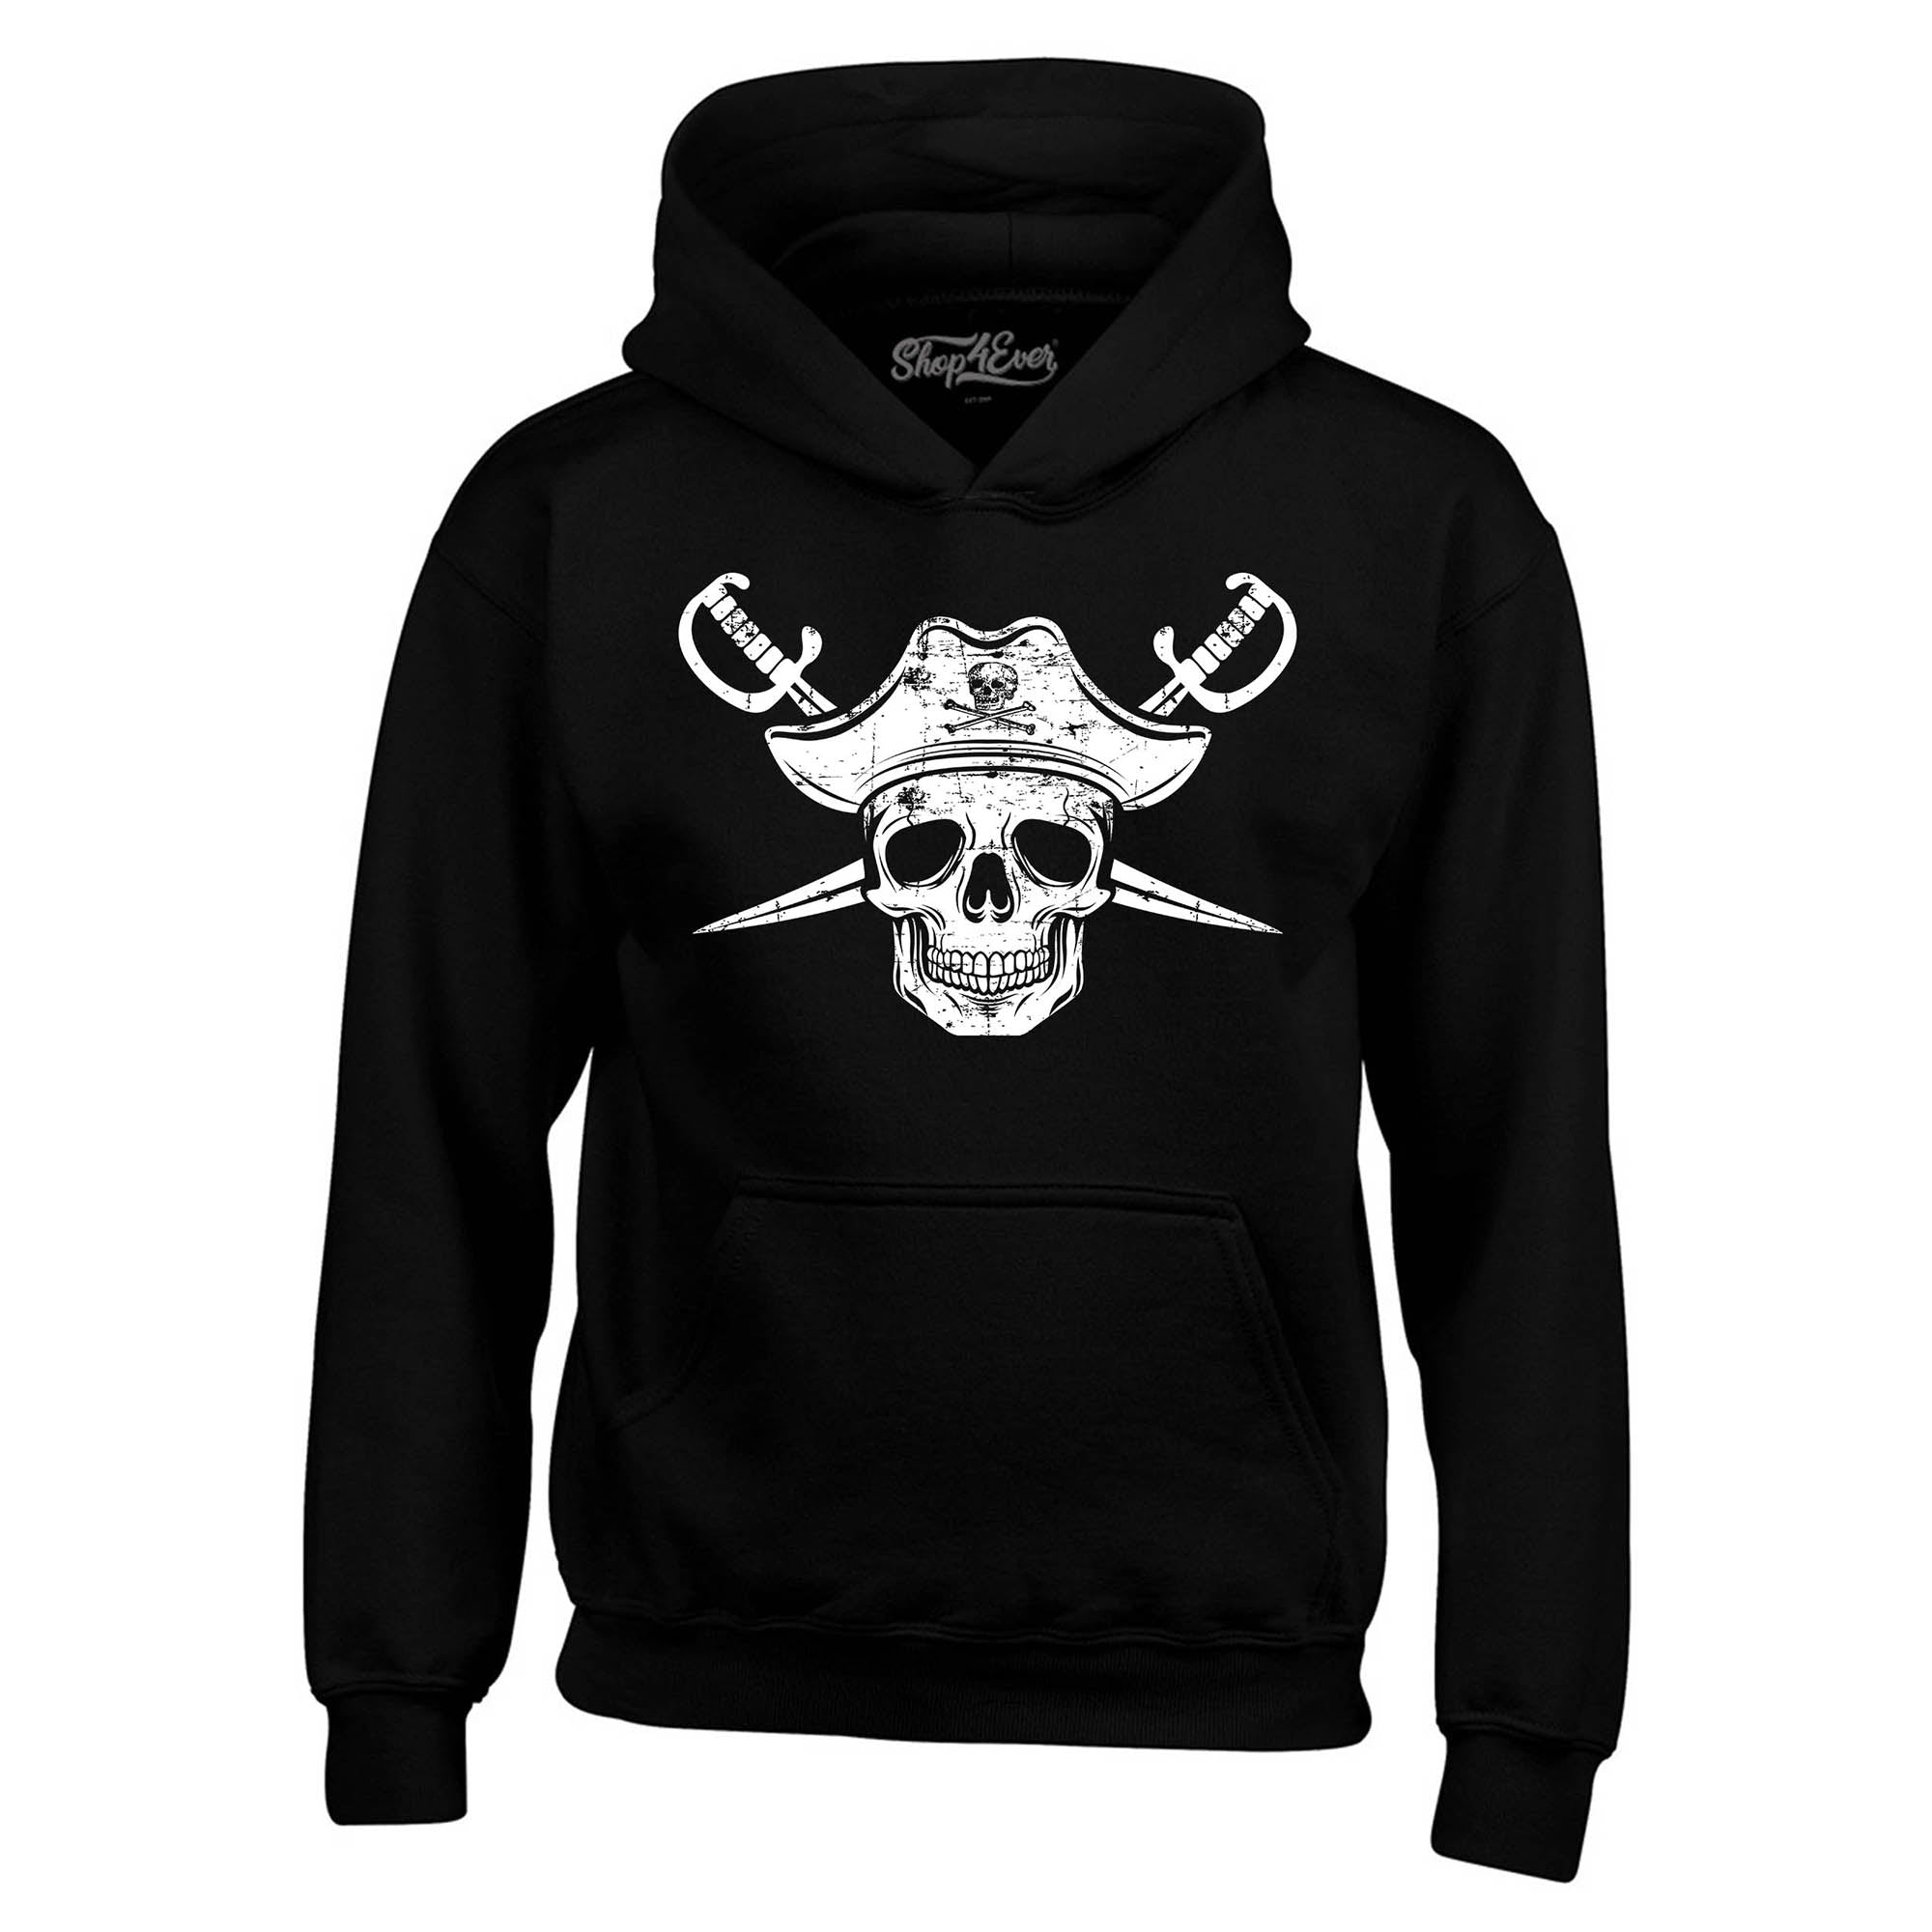 White Pirate Captain Skull with Scimitars Hoodie Sweatshirts